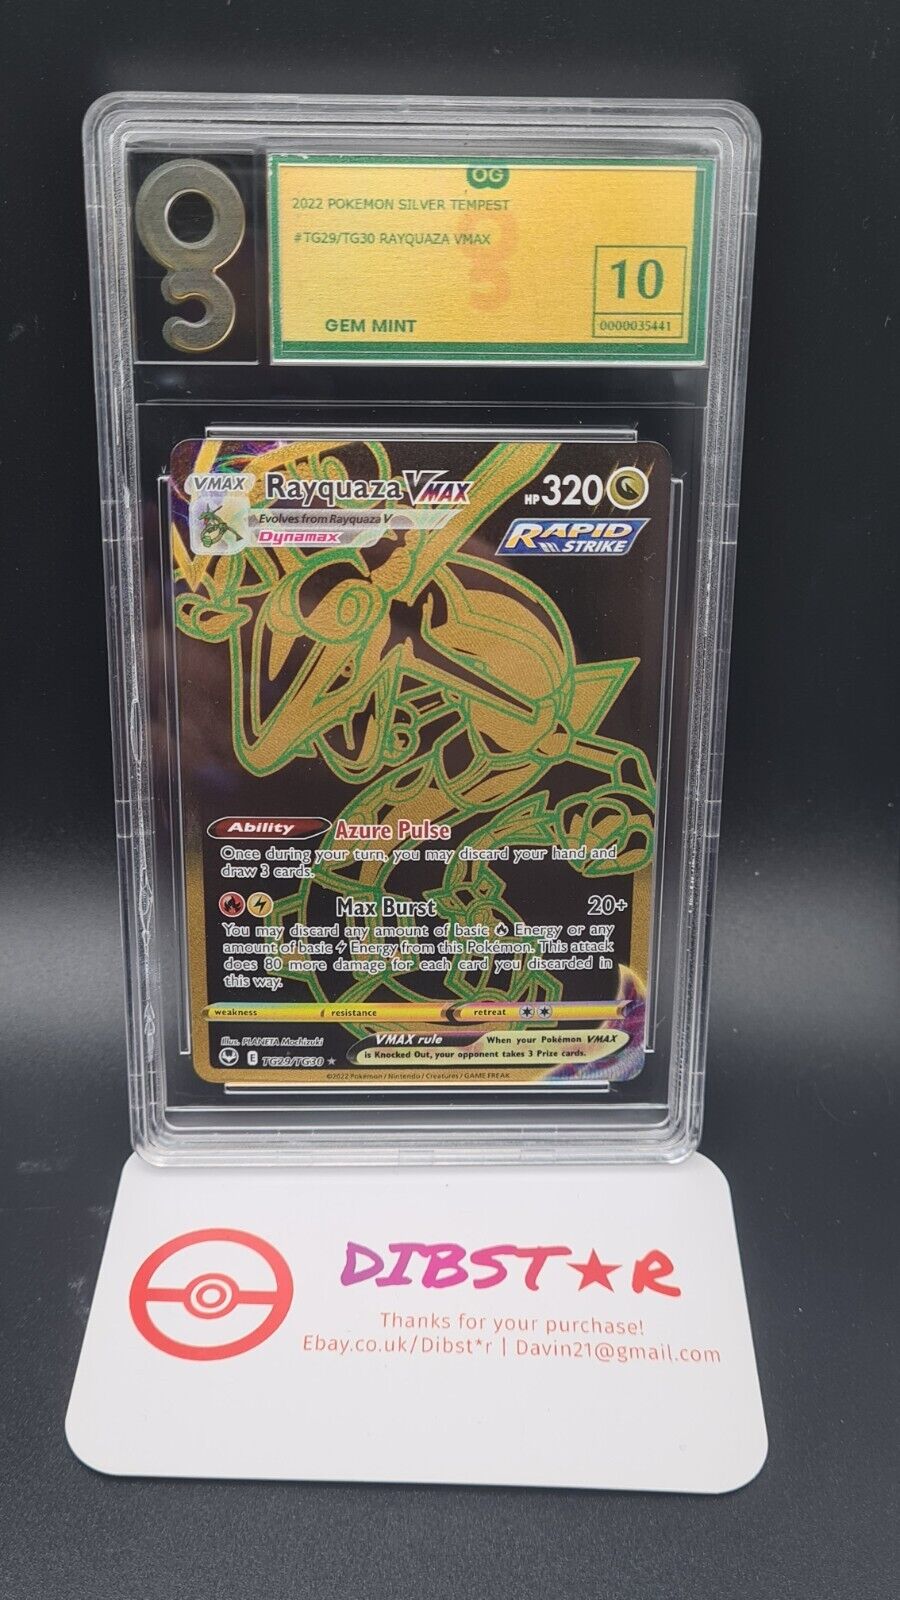 Pokemon Rayquaza Vmax TG29/TG30 Silver Tempest Hyper rare gold full art Grade 10